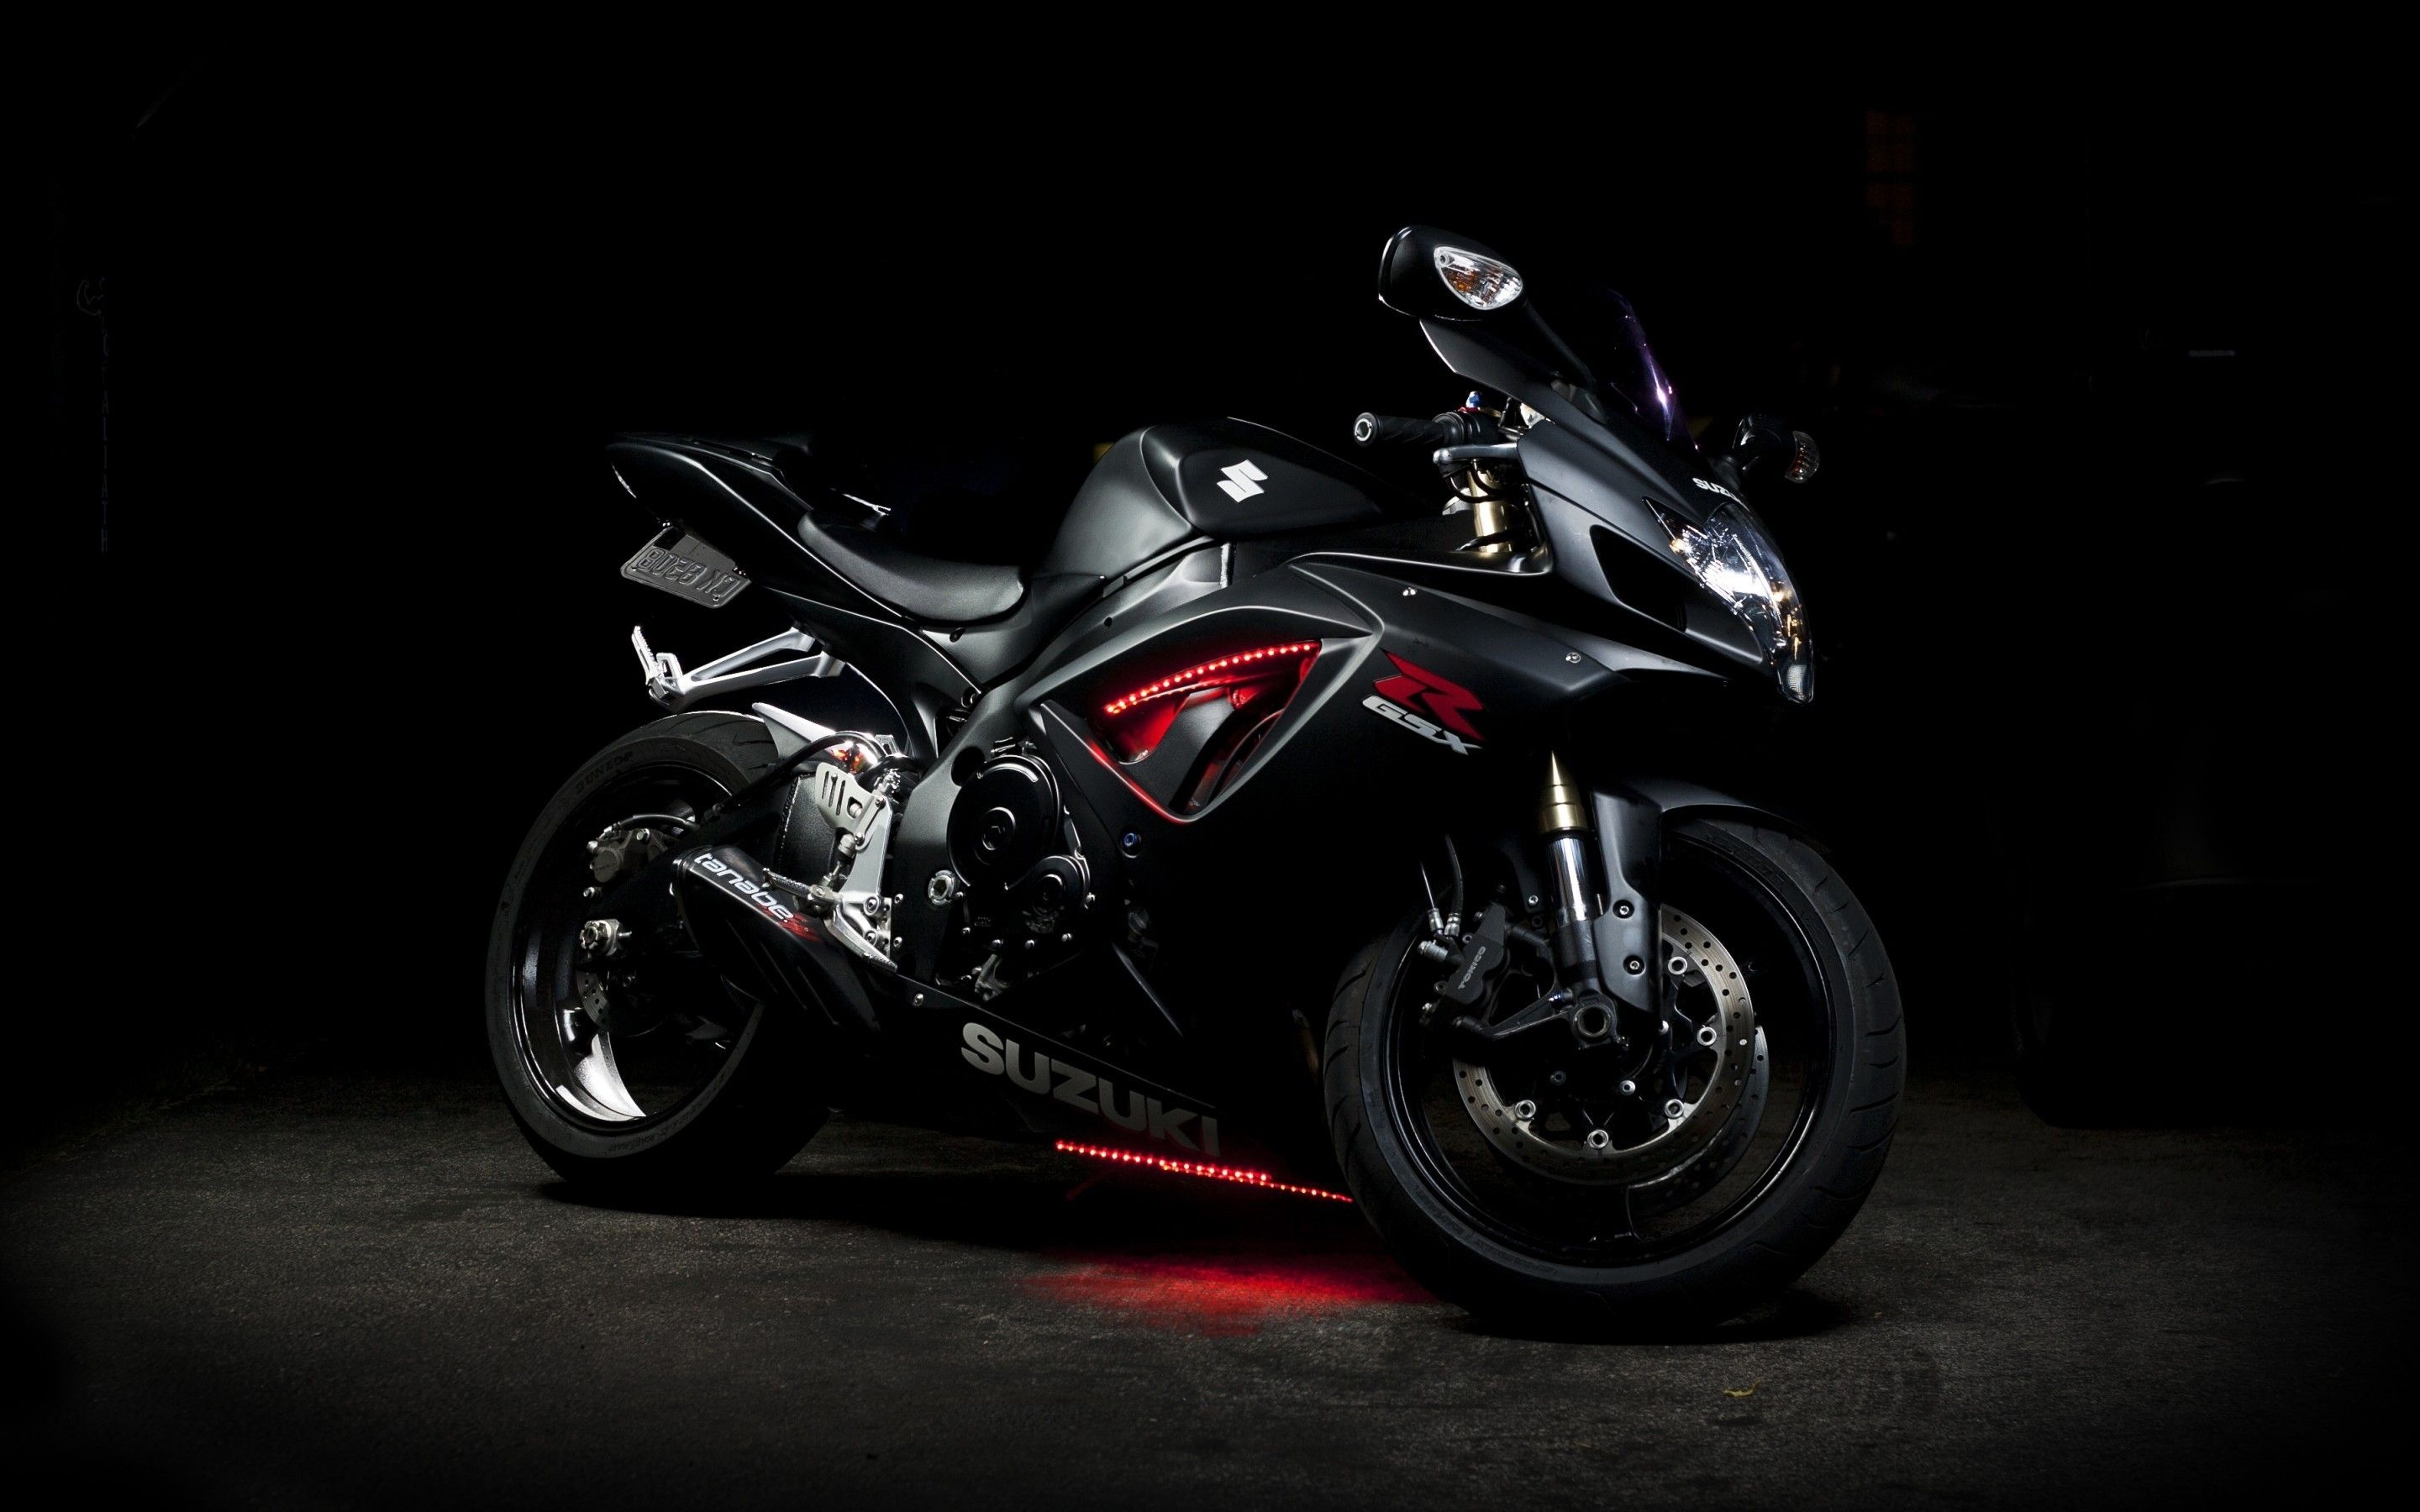 Suzuki GSX-R1000, High-performance bike, Speed and power, Striking visuals, 2880x1800 HD Desktop